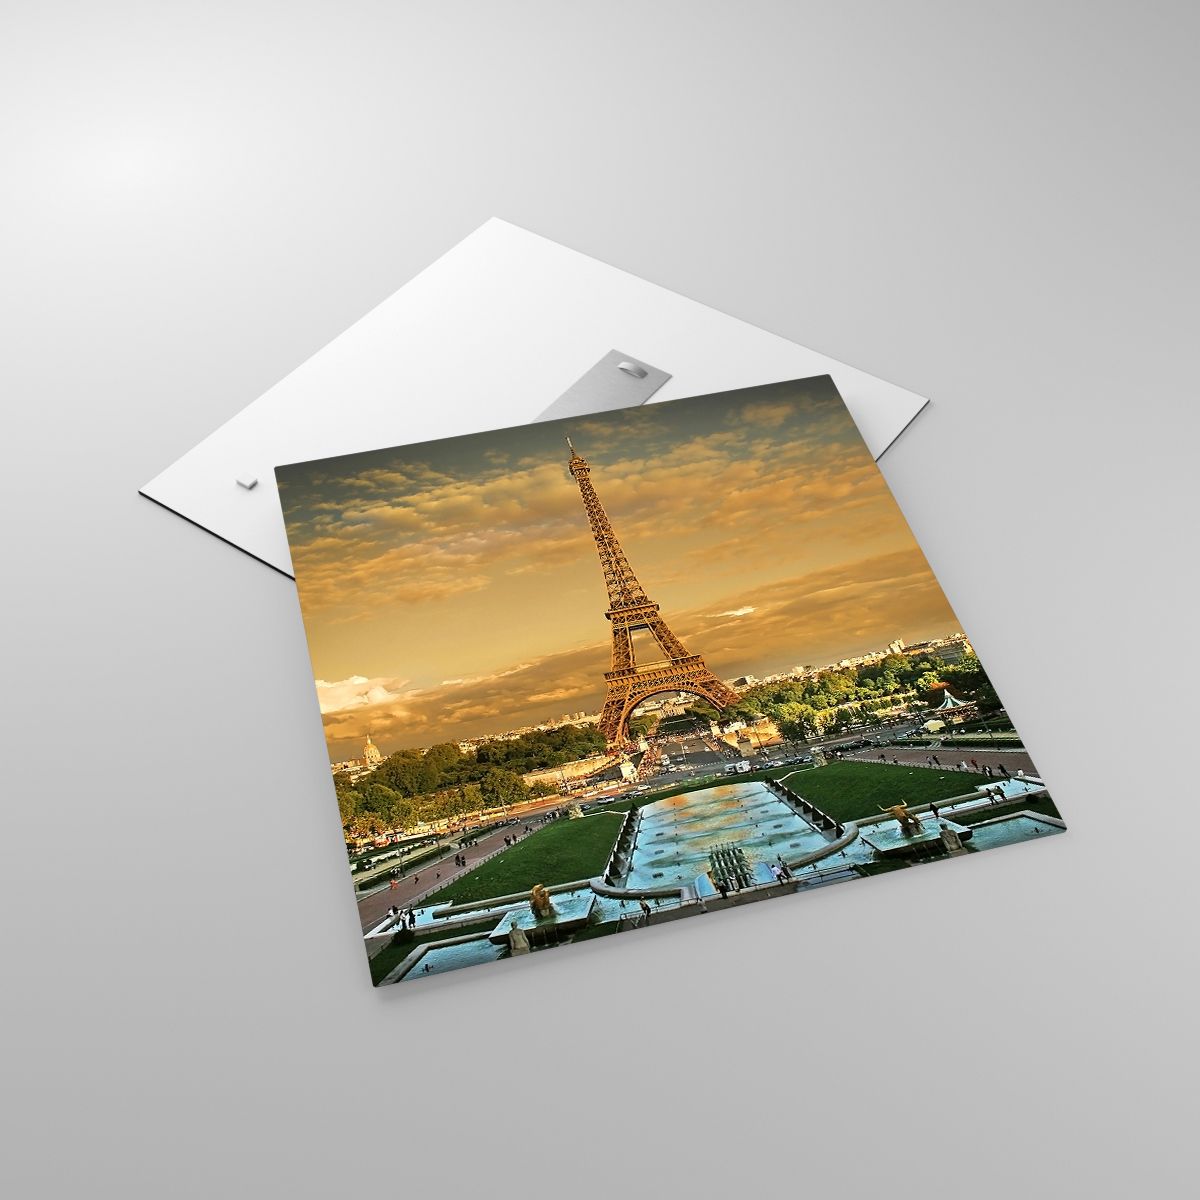 Glasbild Städte, Glasbild Paris, Glasbild Eiffelturm, Glasbild Die Architektur, Glasbild Frankreich